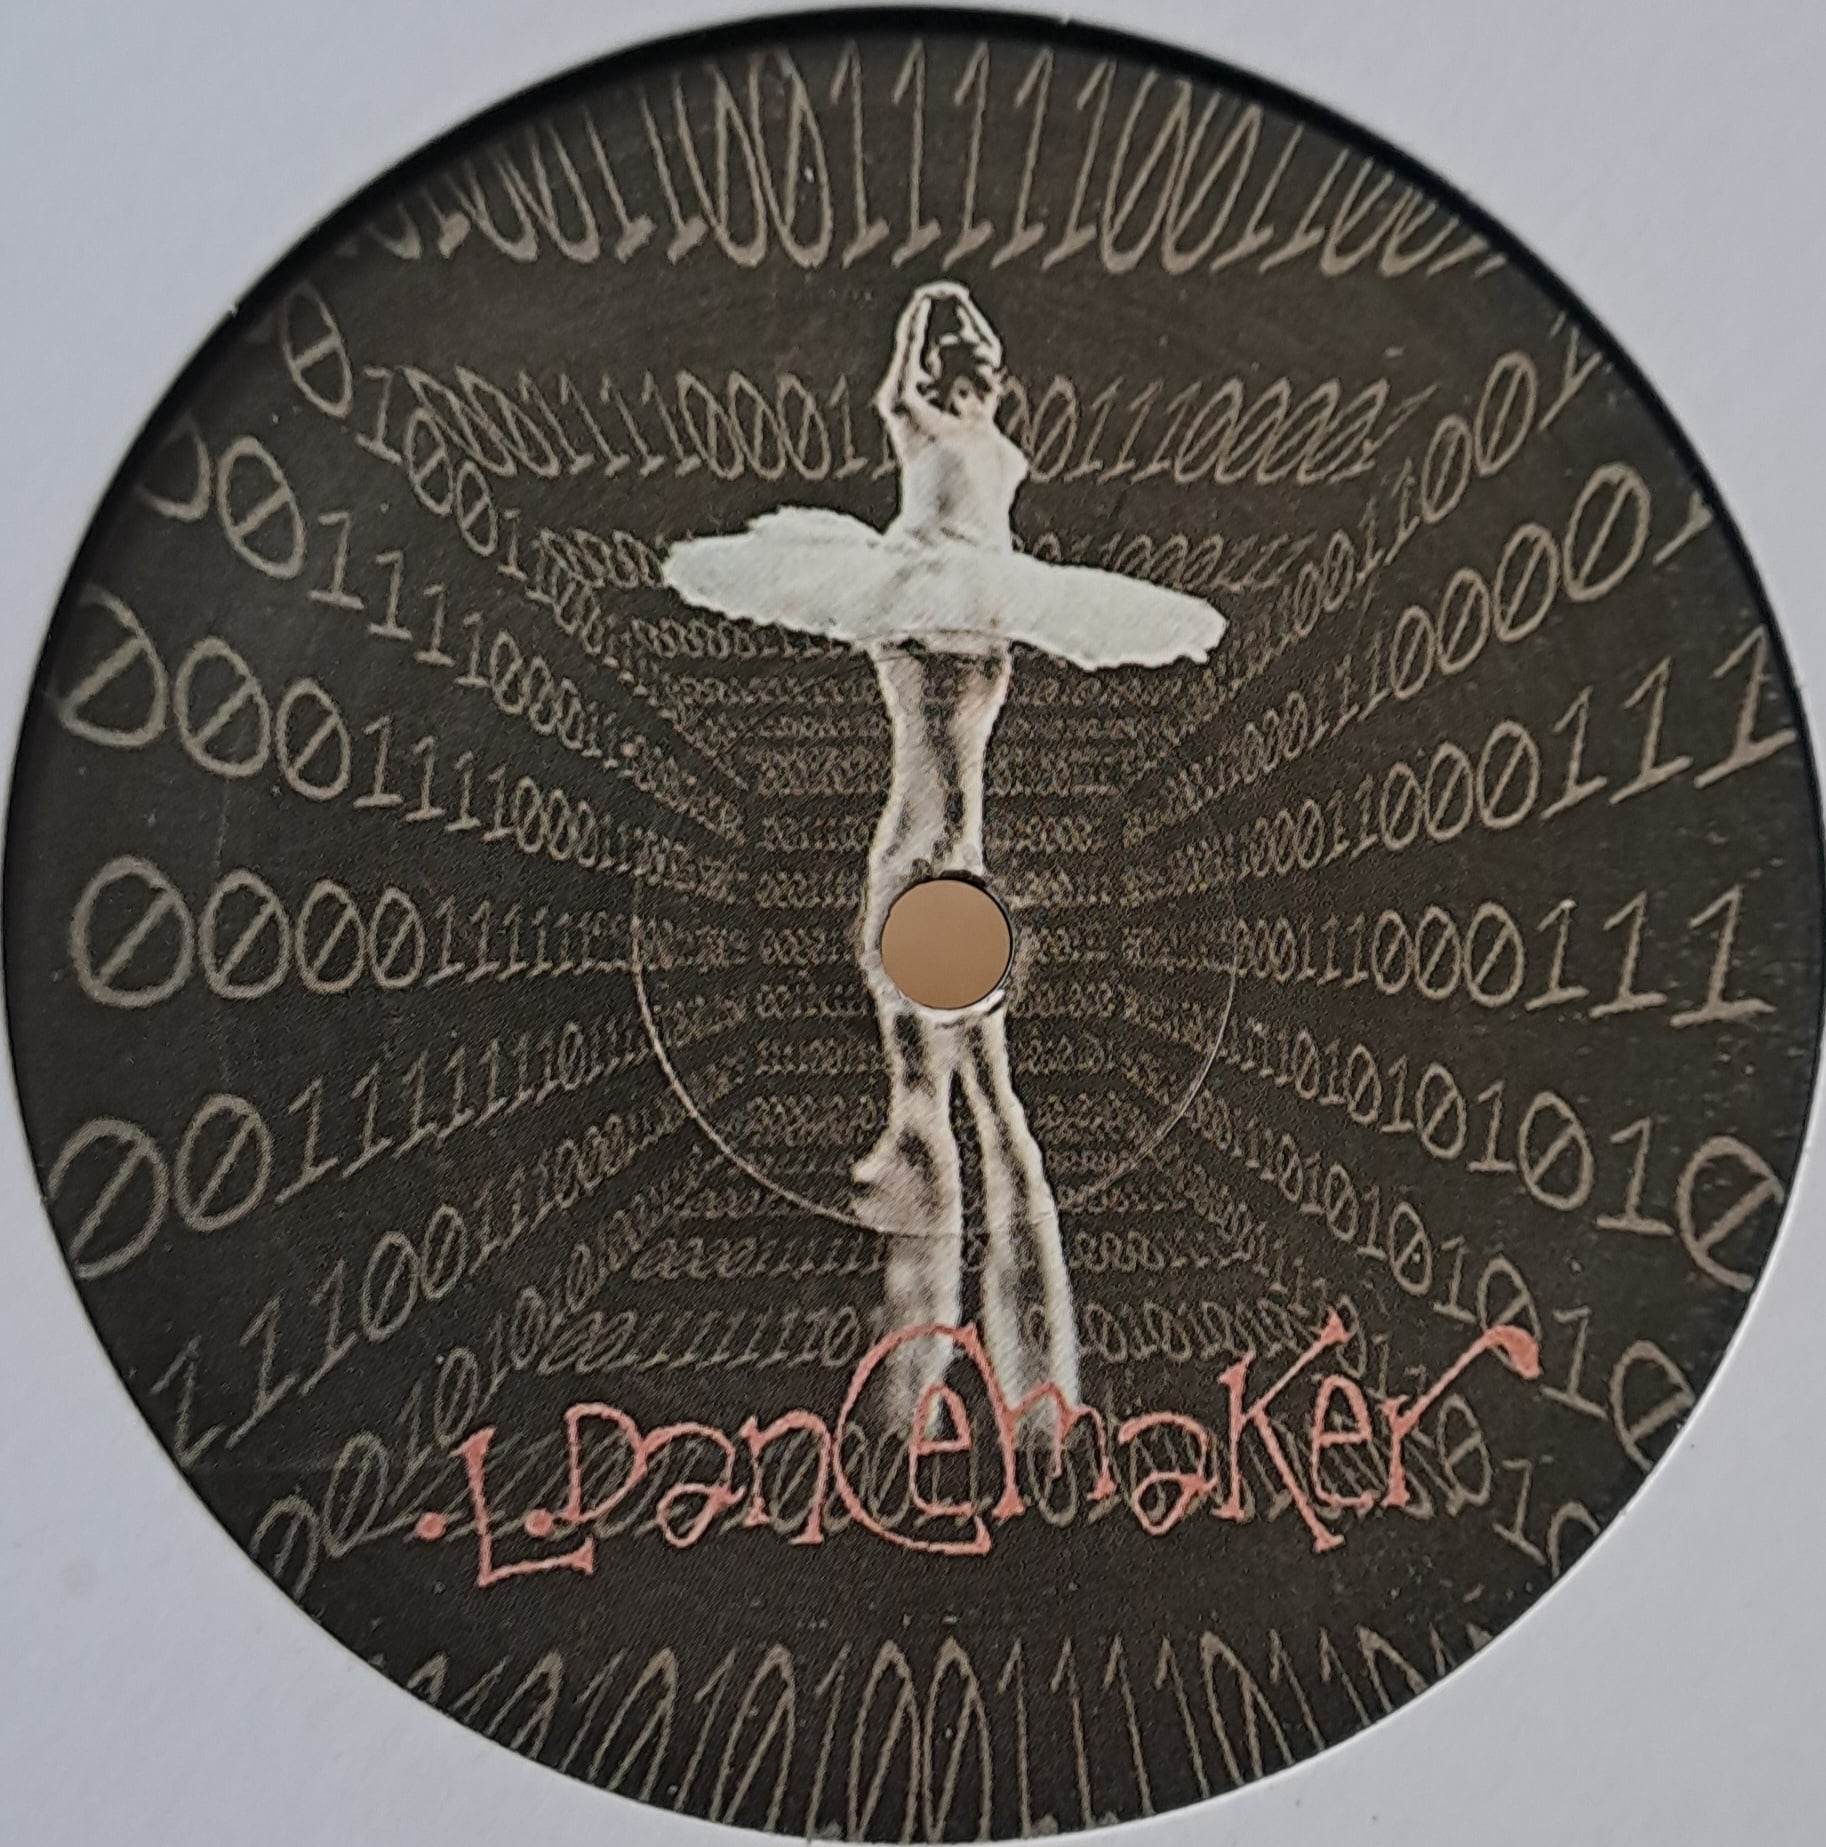 1) Dancemaker 01 - vinyle freetekno